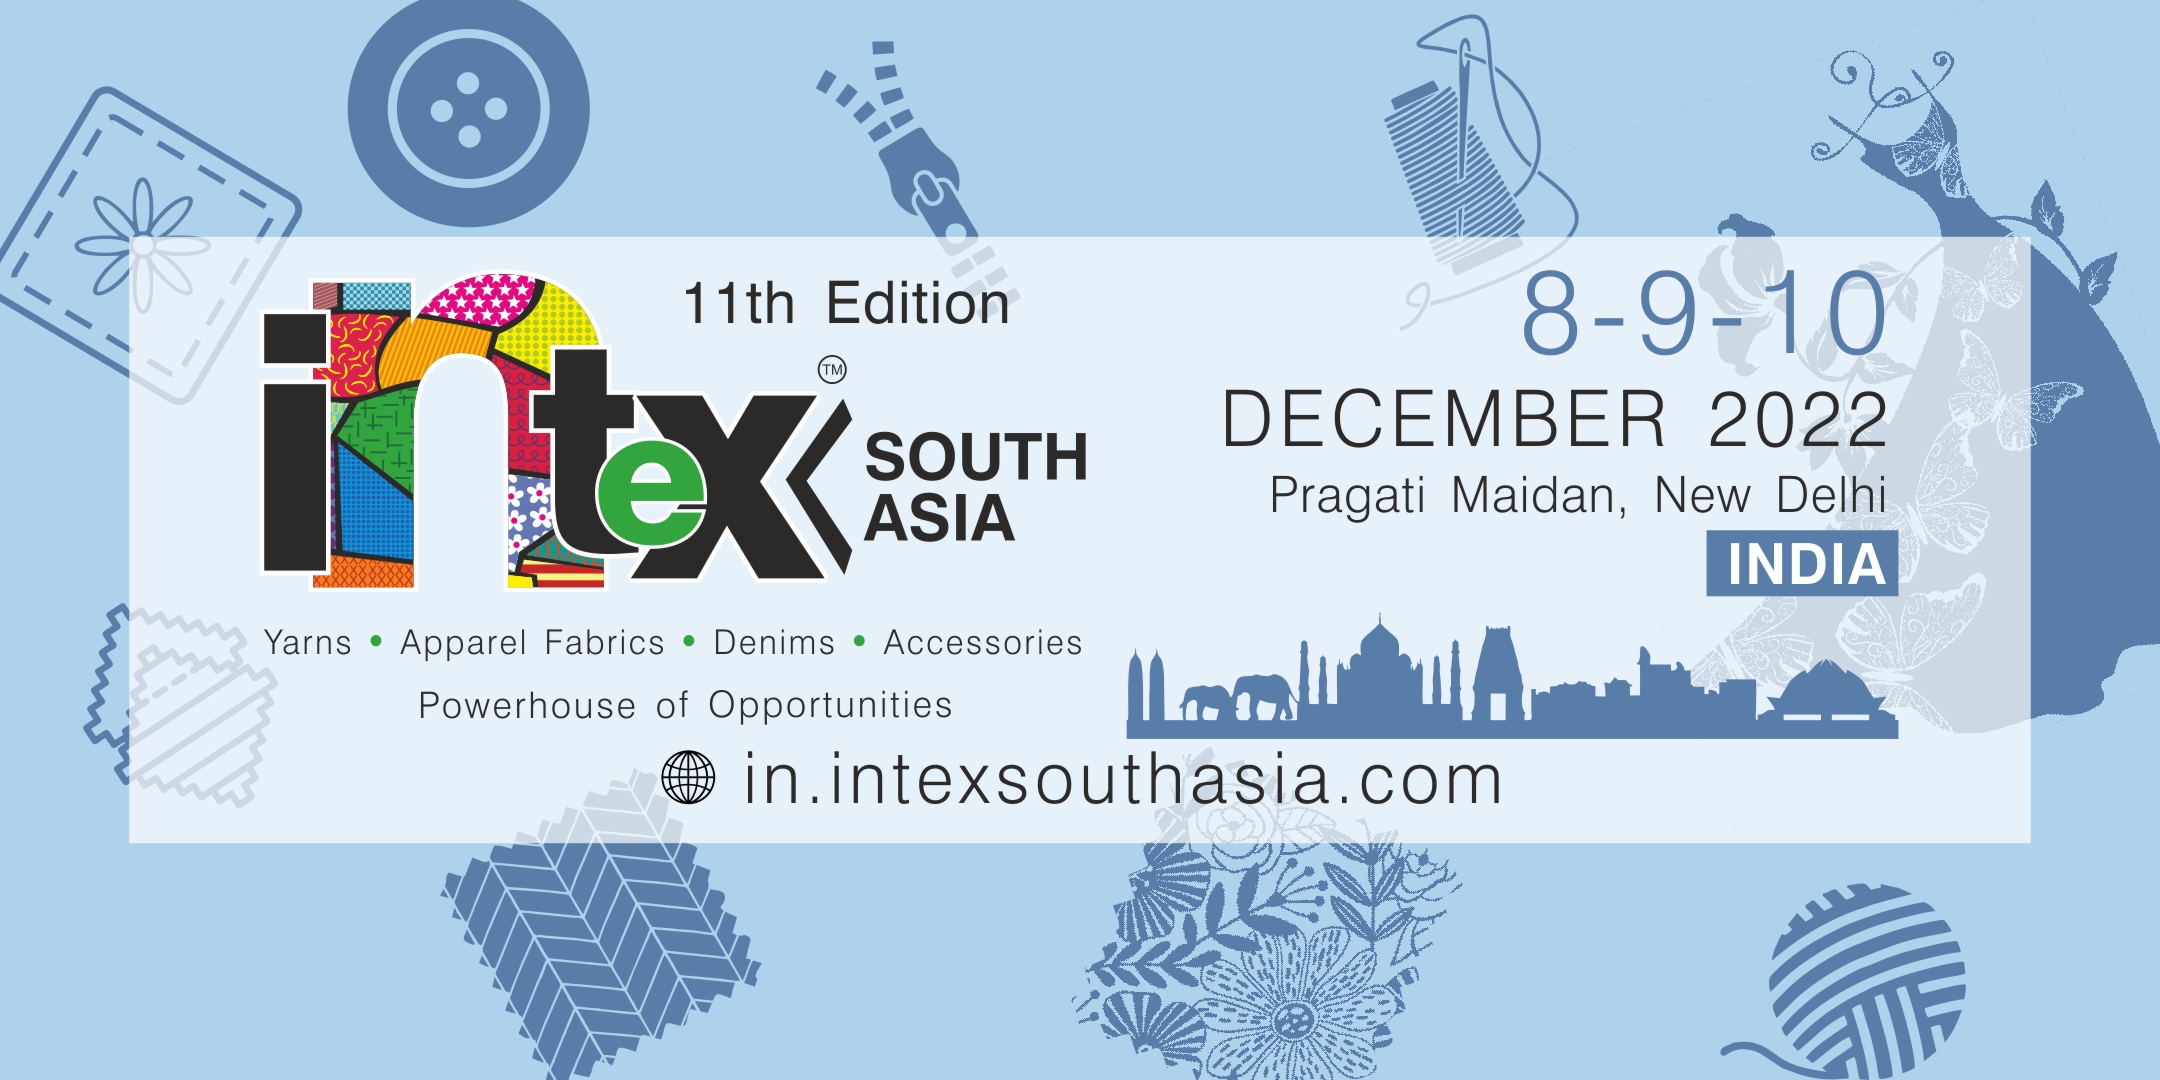 Intex South Asia India, Central Delhi, Delhi, India